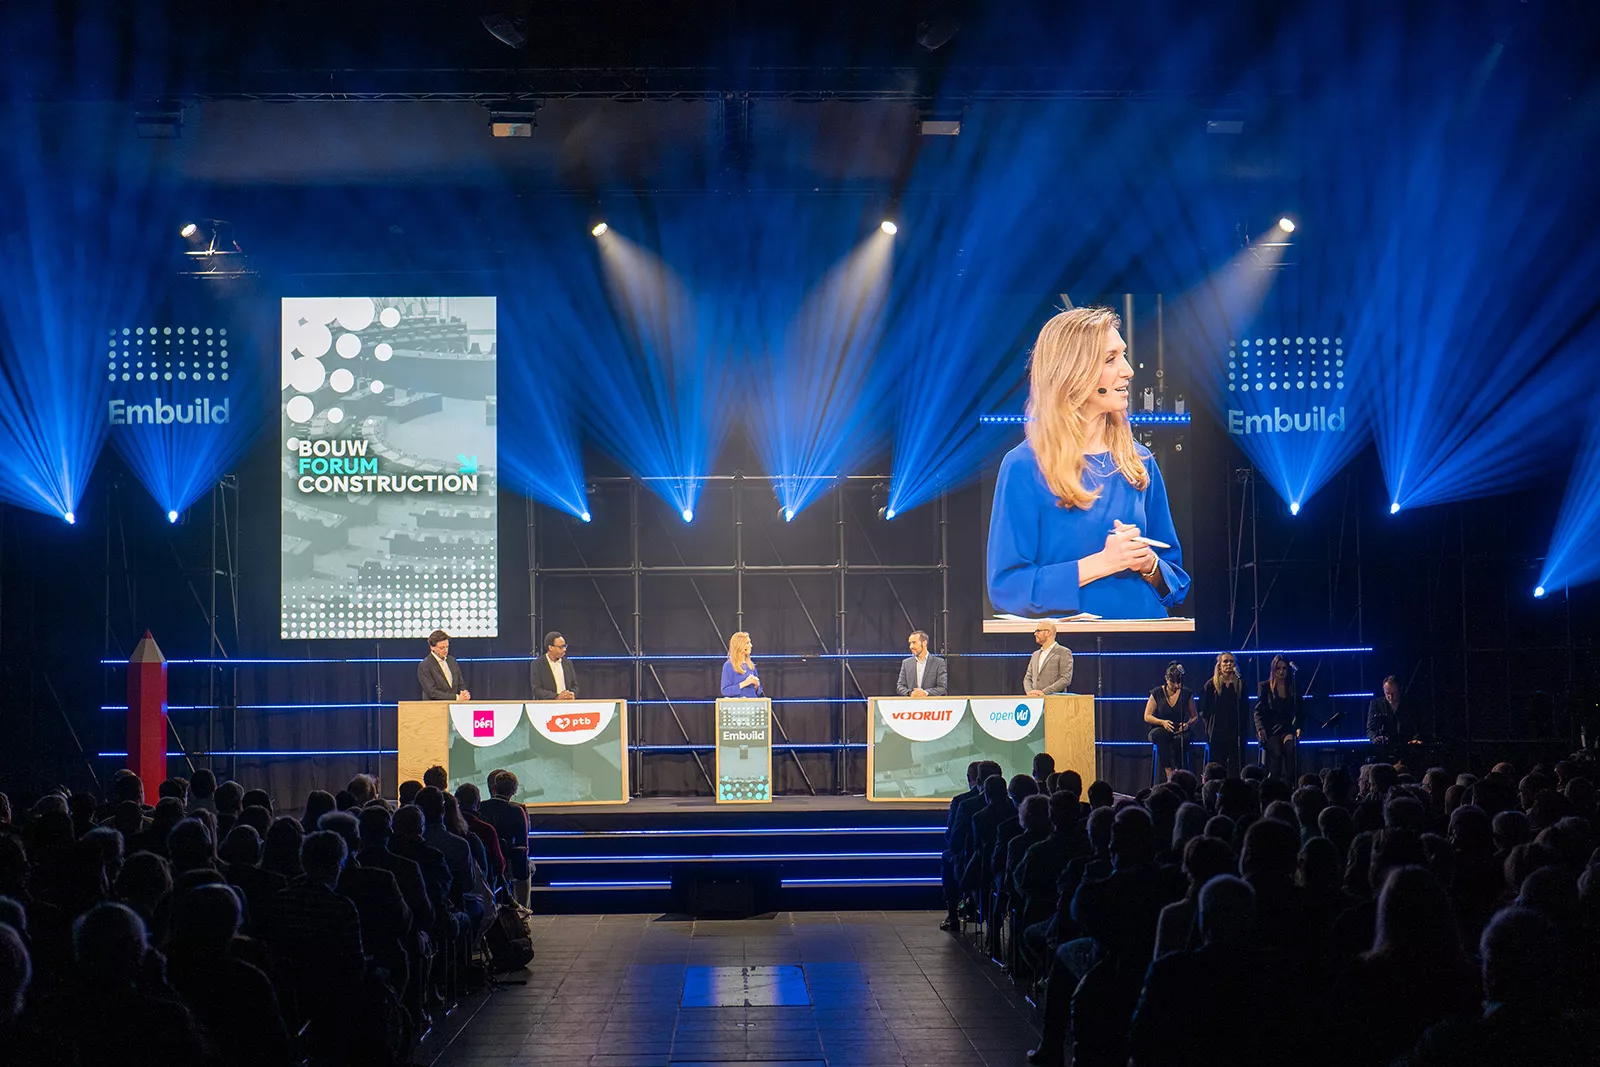 Embuild BouwForum podium met groot scherm en lichtshow